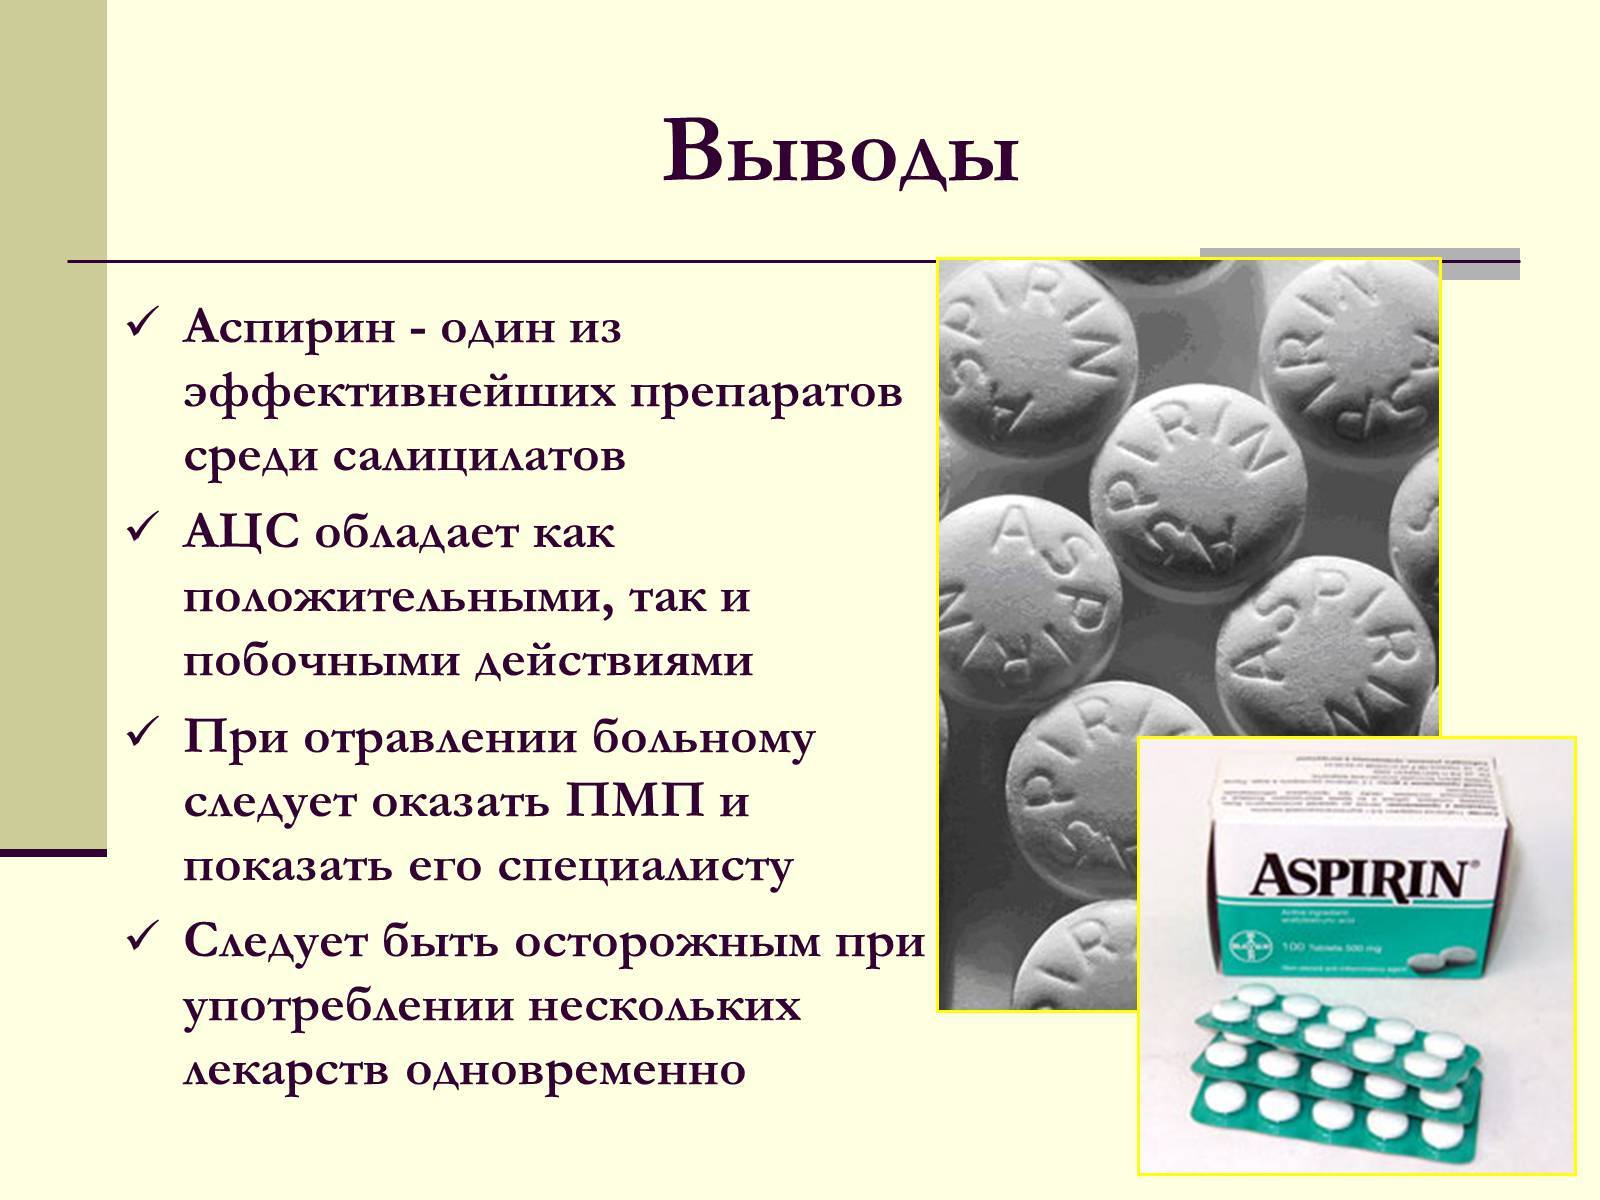 Аспирин комплекс. инструкция по применению. справочник лекарств, медикаментов, бад